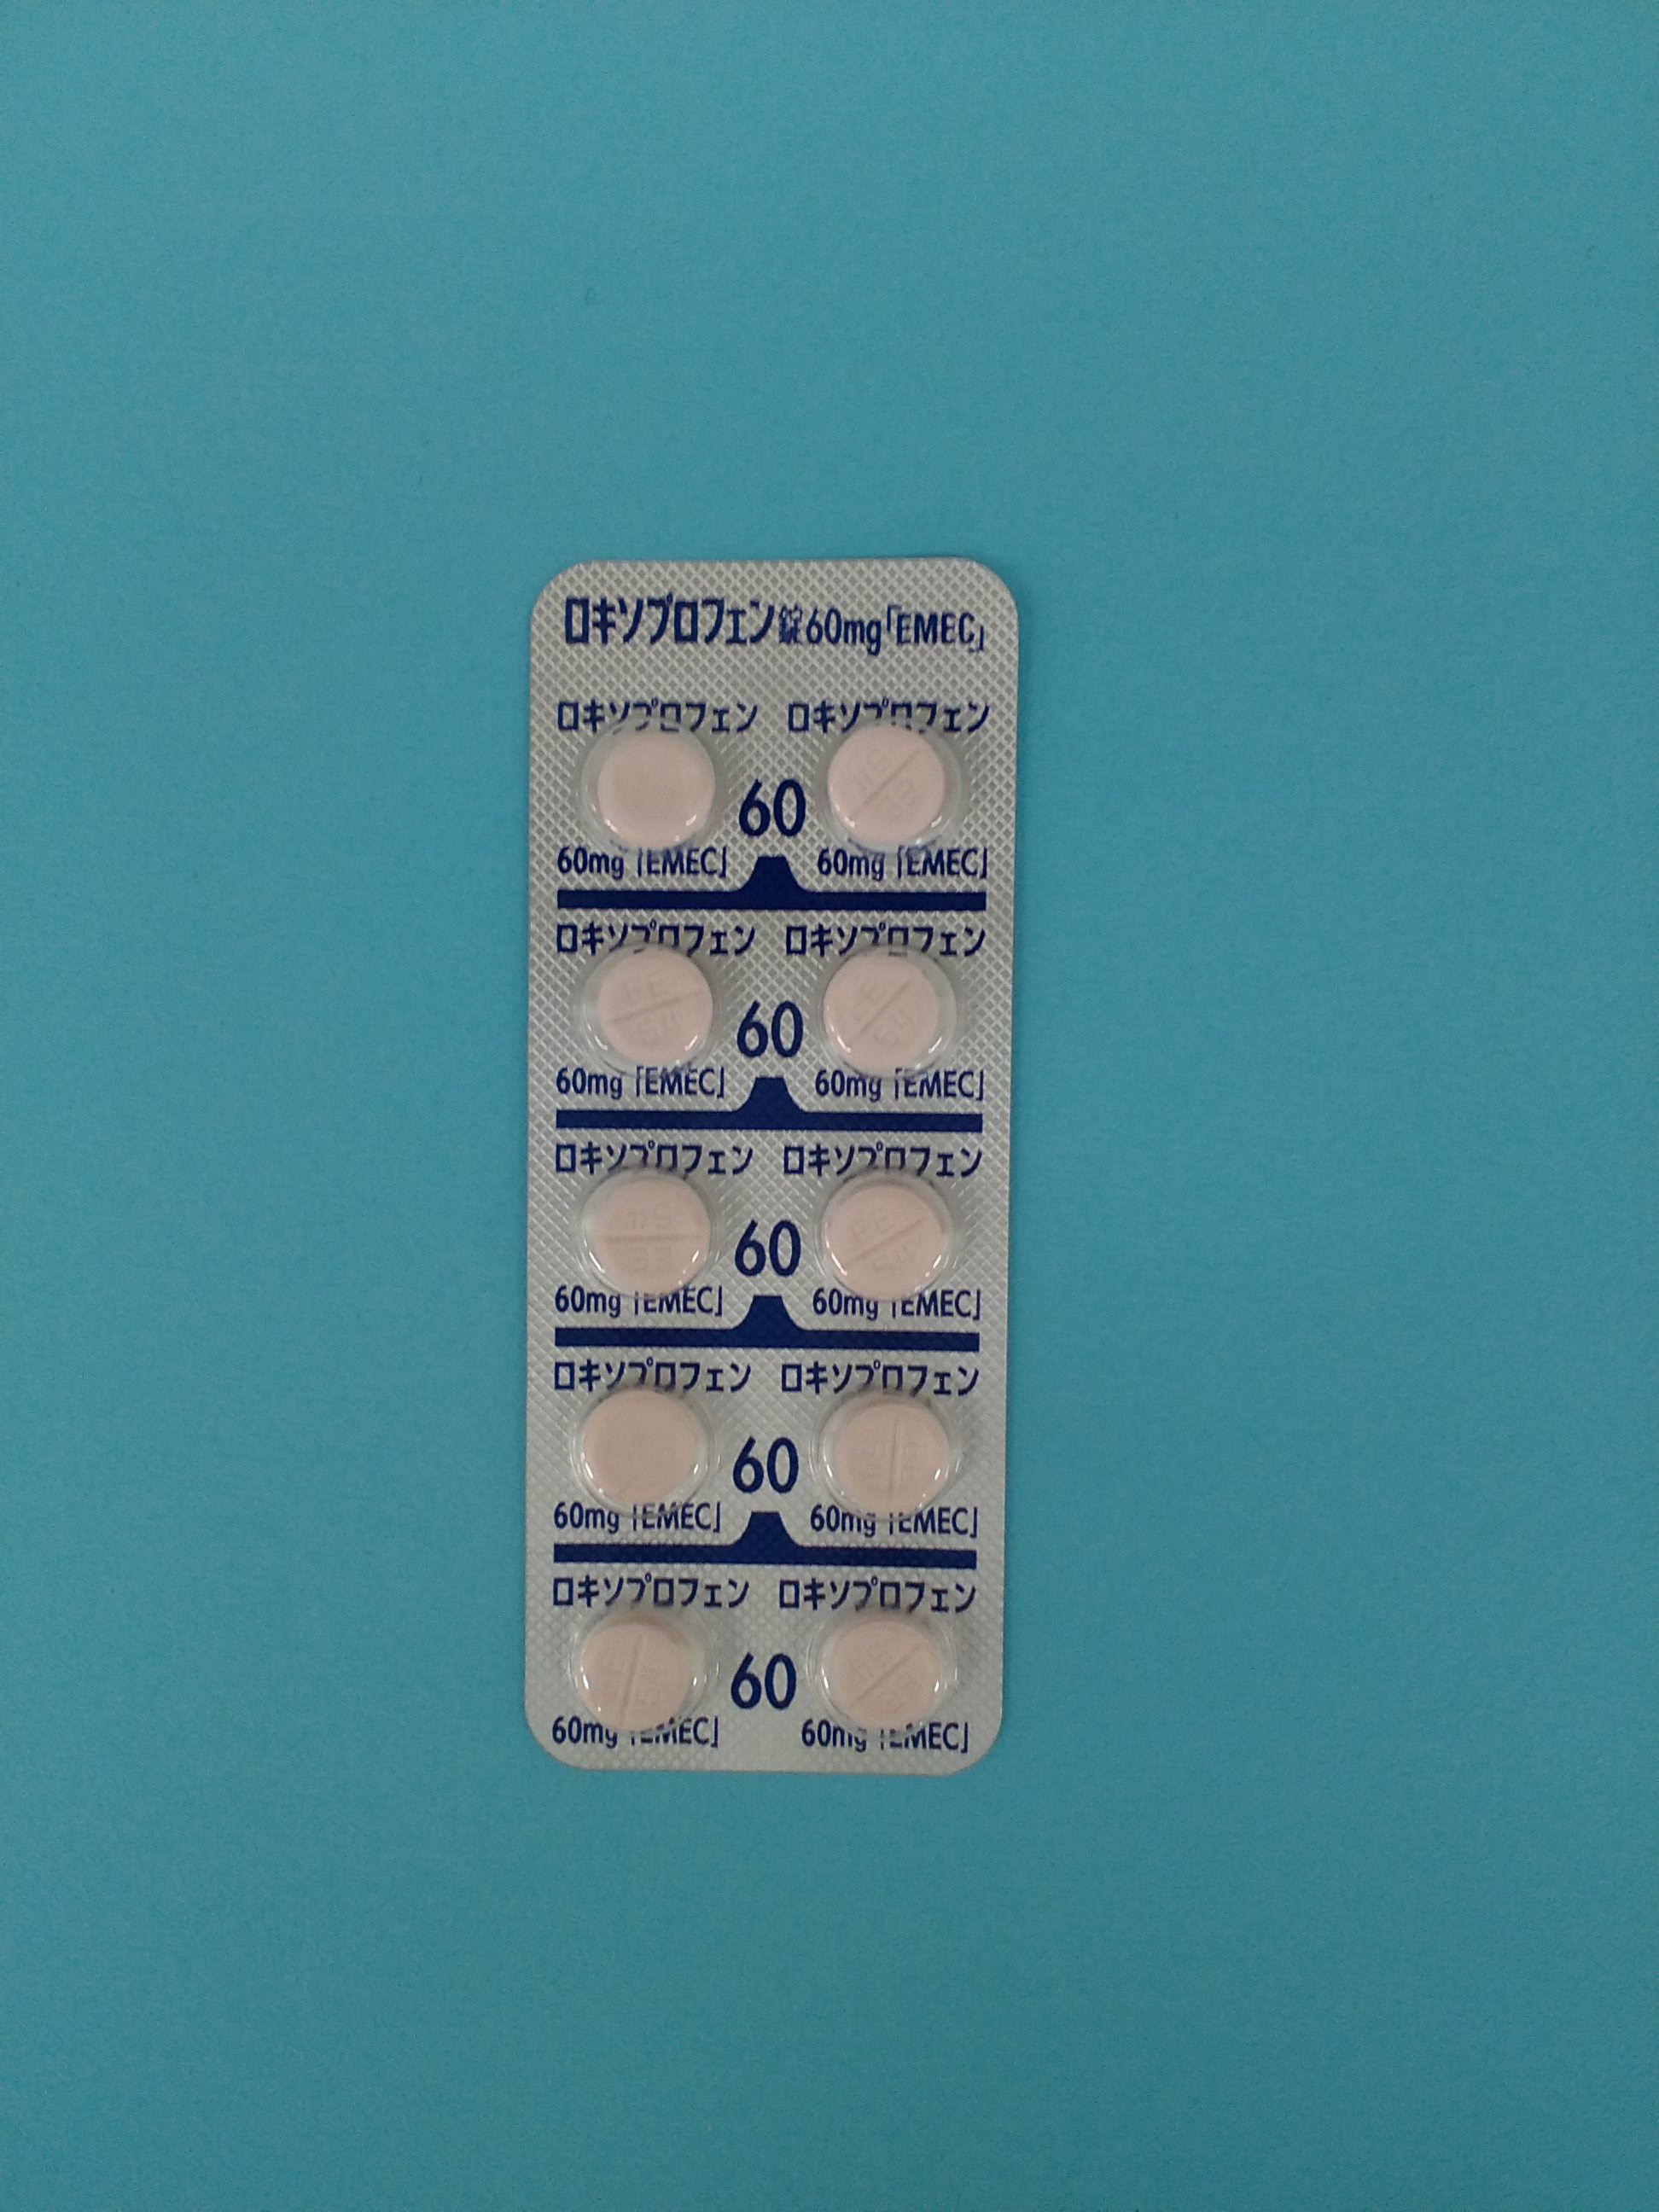 ロキソプロフェン錠60㎎「EMEC」